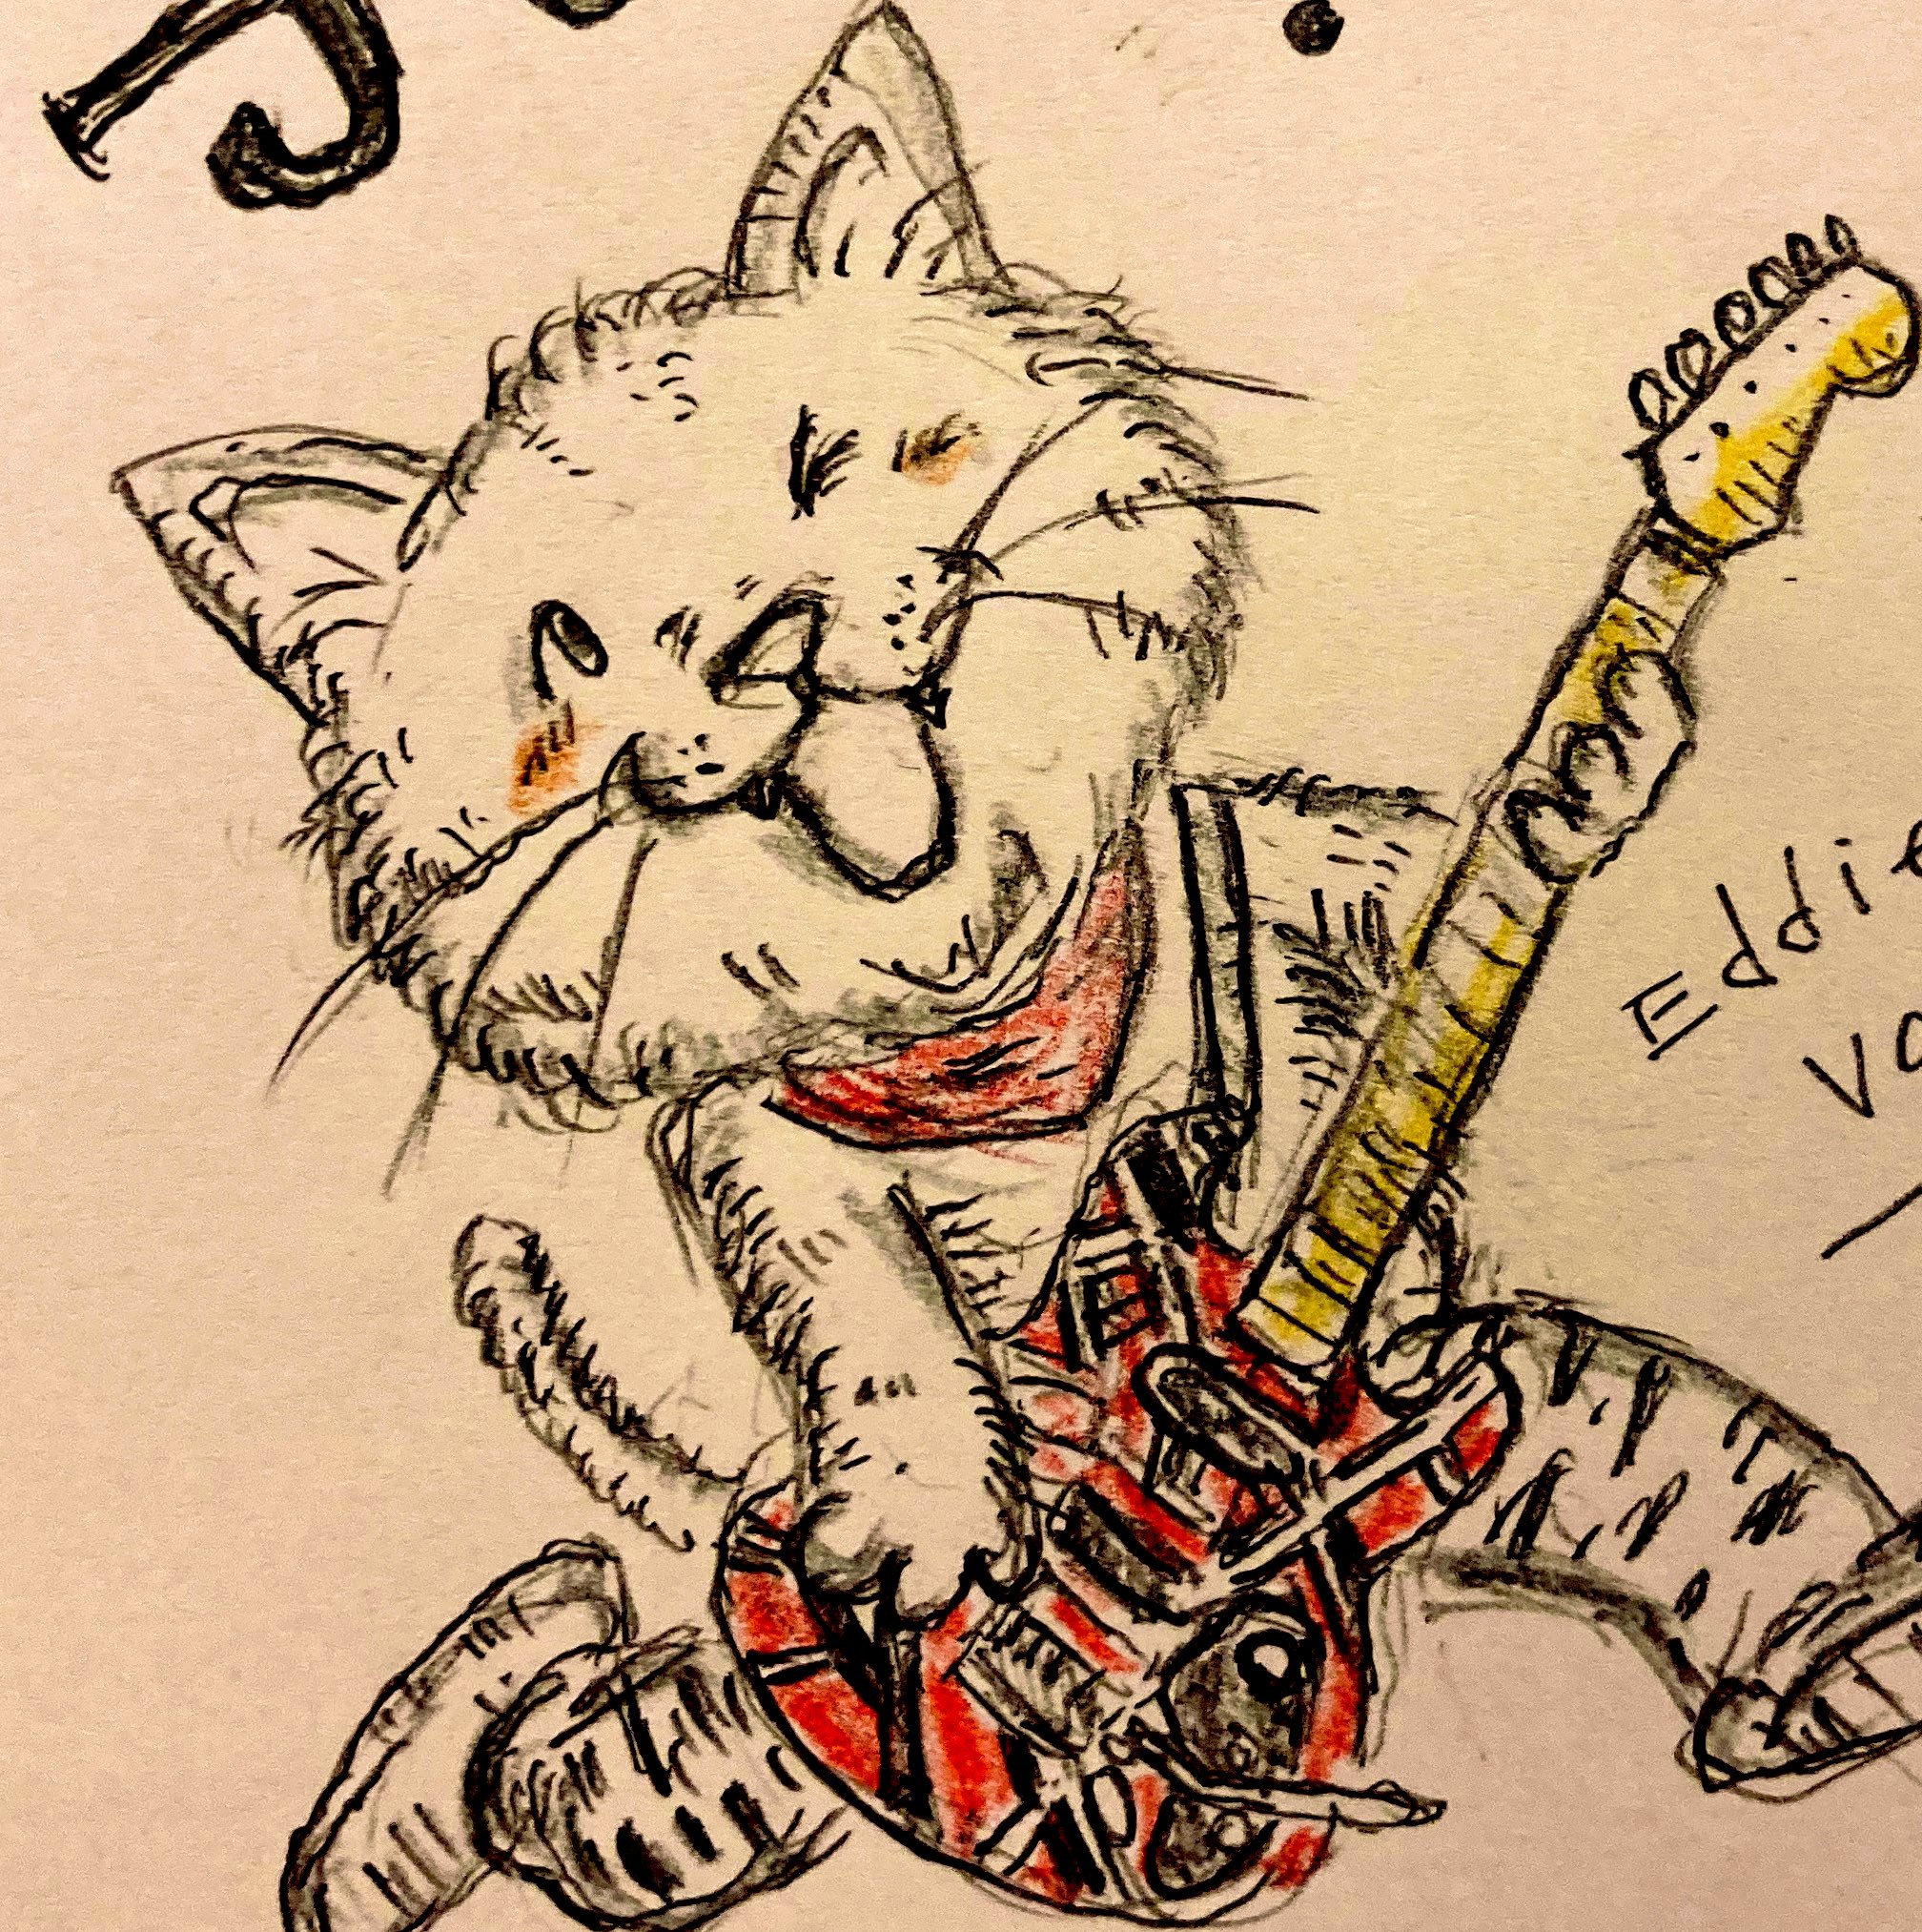 ねこしんぶん On Twitter 最高のかっこいいギター演奏と笑顔をありがとう 安らかにおやすみ下さい イラスト アナログイラスト 猫イラスト エディヴァンヘイレン Eddievanhalen Https T Co Fsytf5eh9r Twitter